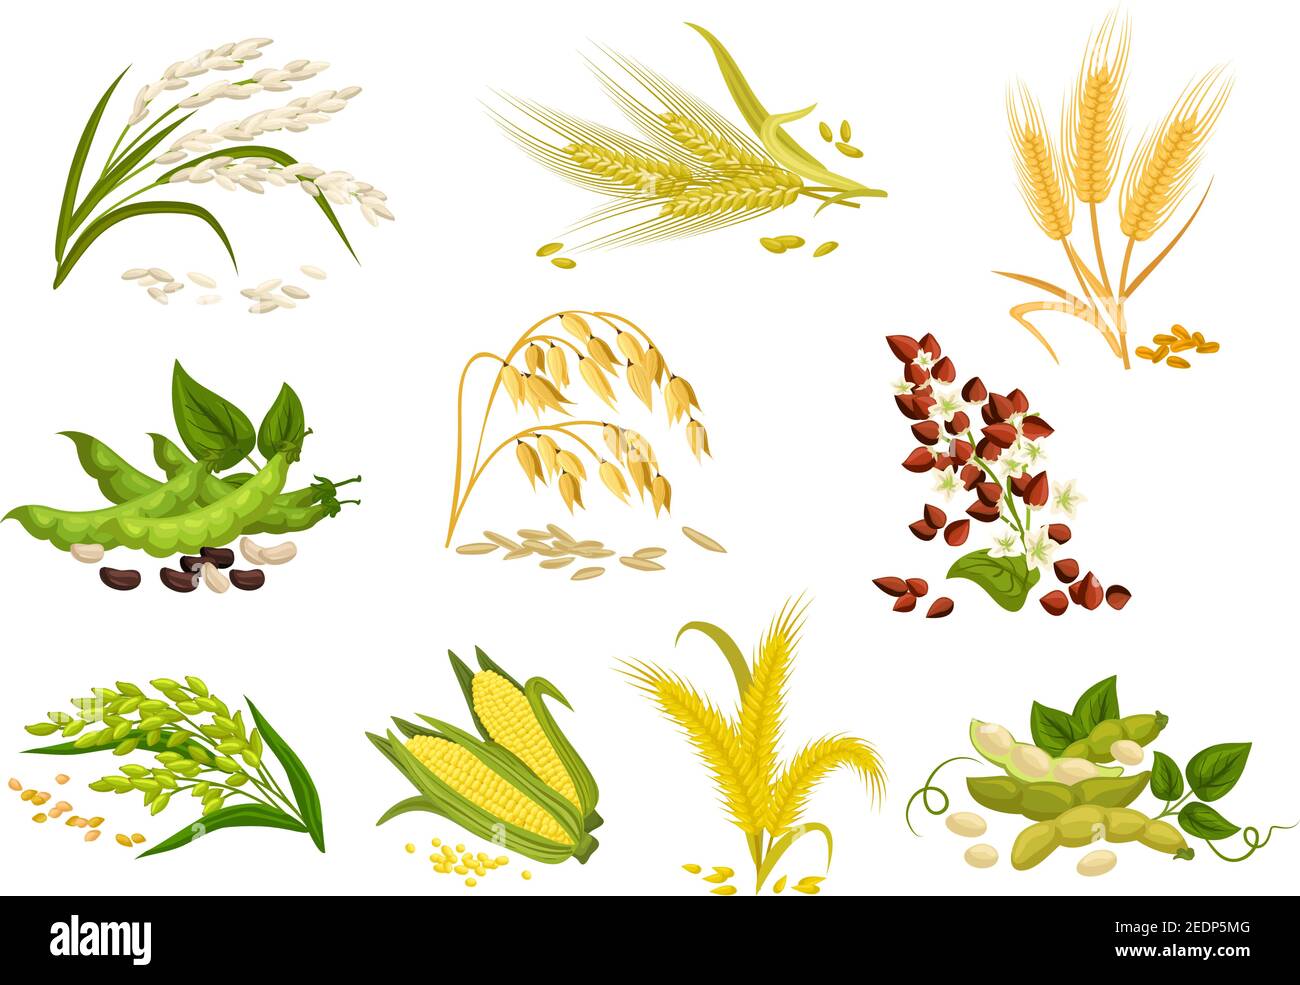 Getreide Symbole von Getreide Pflanzen. Vektor Ohren Weizen und Roggen, Buchweizen Samen und Hafer oder Gerste, Hirse und Reis Garbe. Isolierte Landwirtschaft Maiskolben und l Stock Vektor